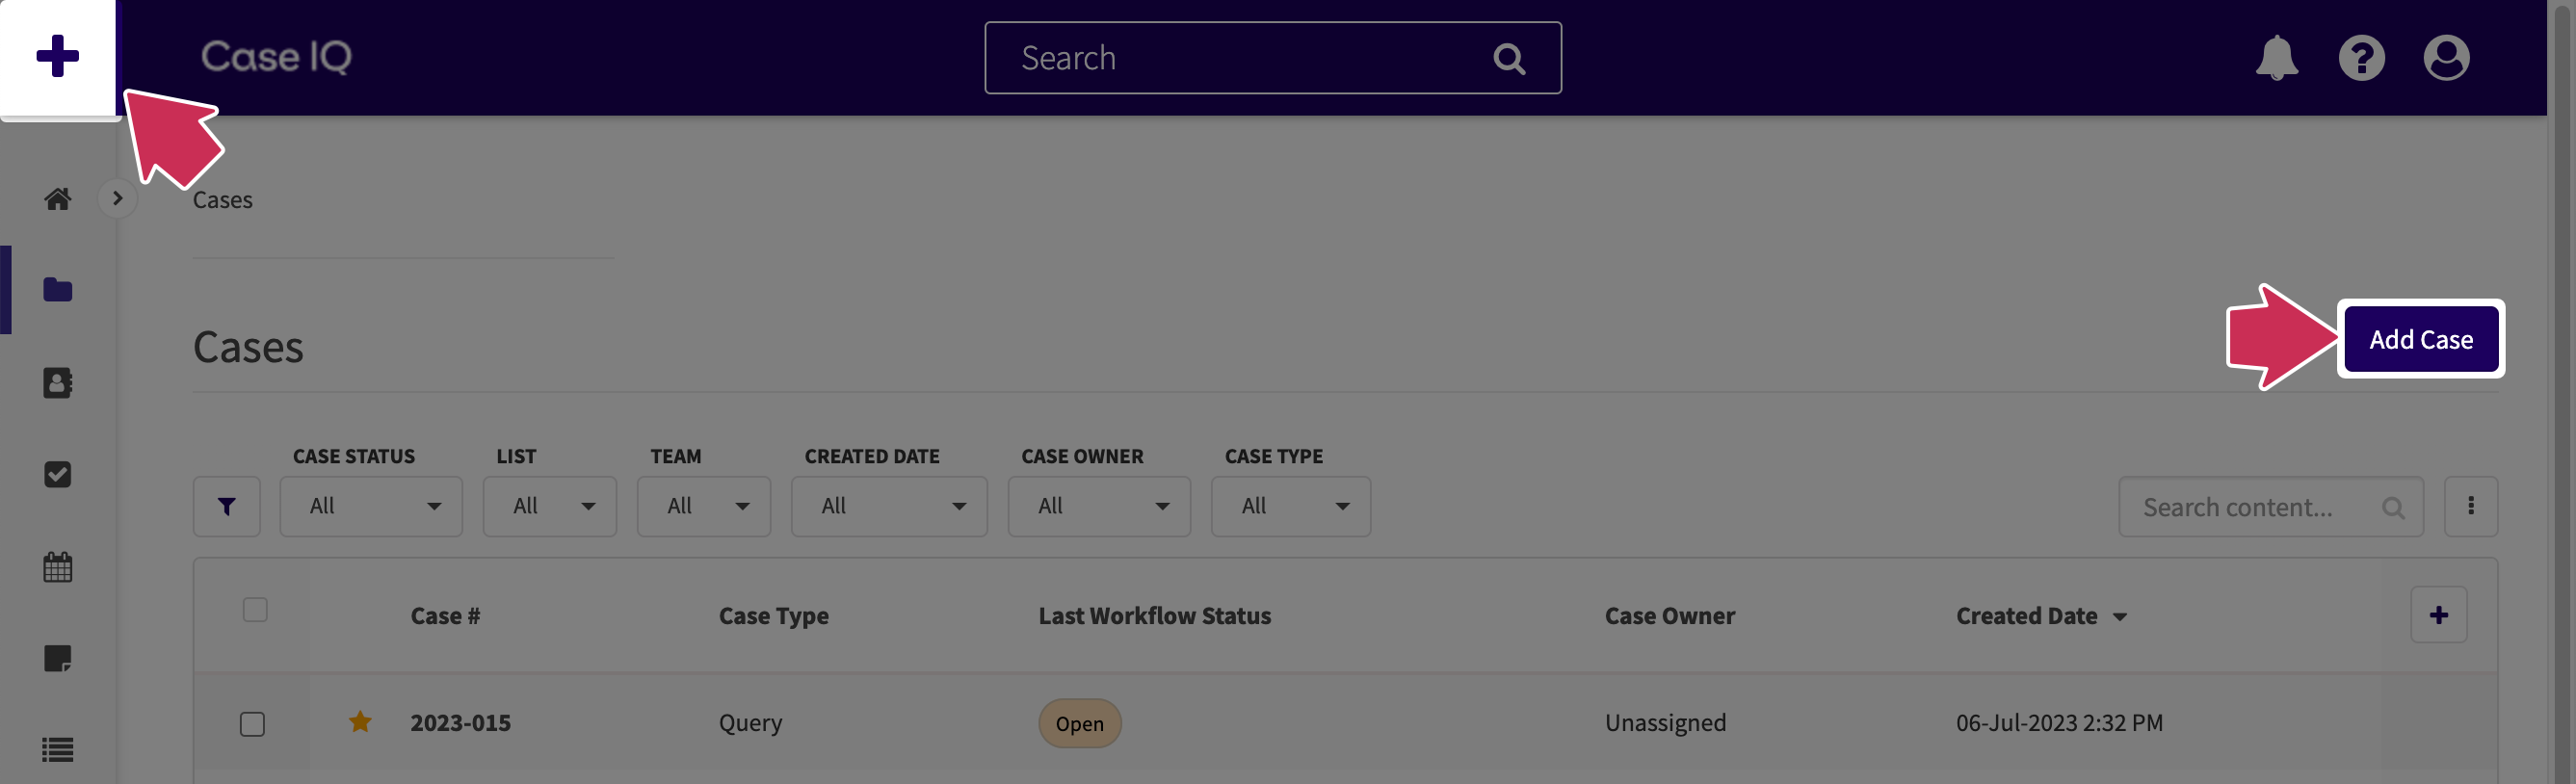 Le bouton d'ajout rapide en haut de la page est mis en surbrillance. Sur la page Grille des cas, le bouton Ajouter un cas s'affiche également.